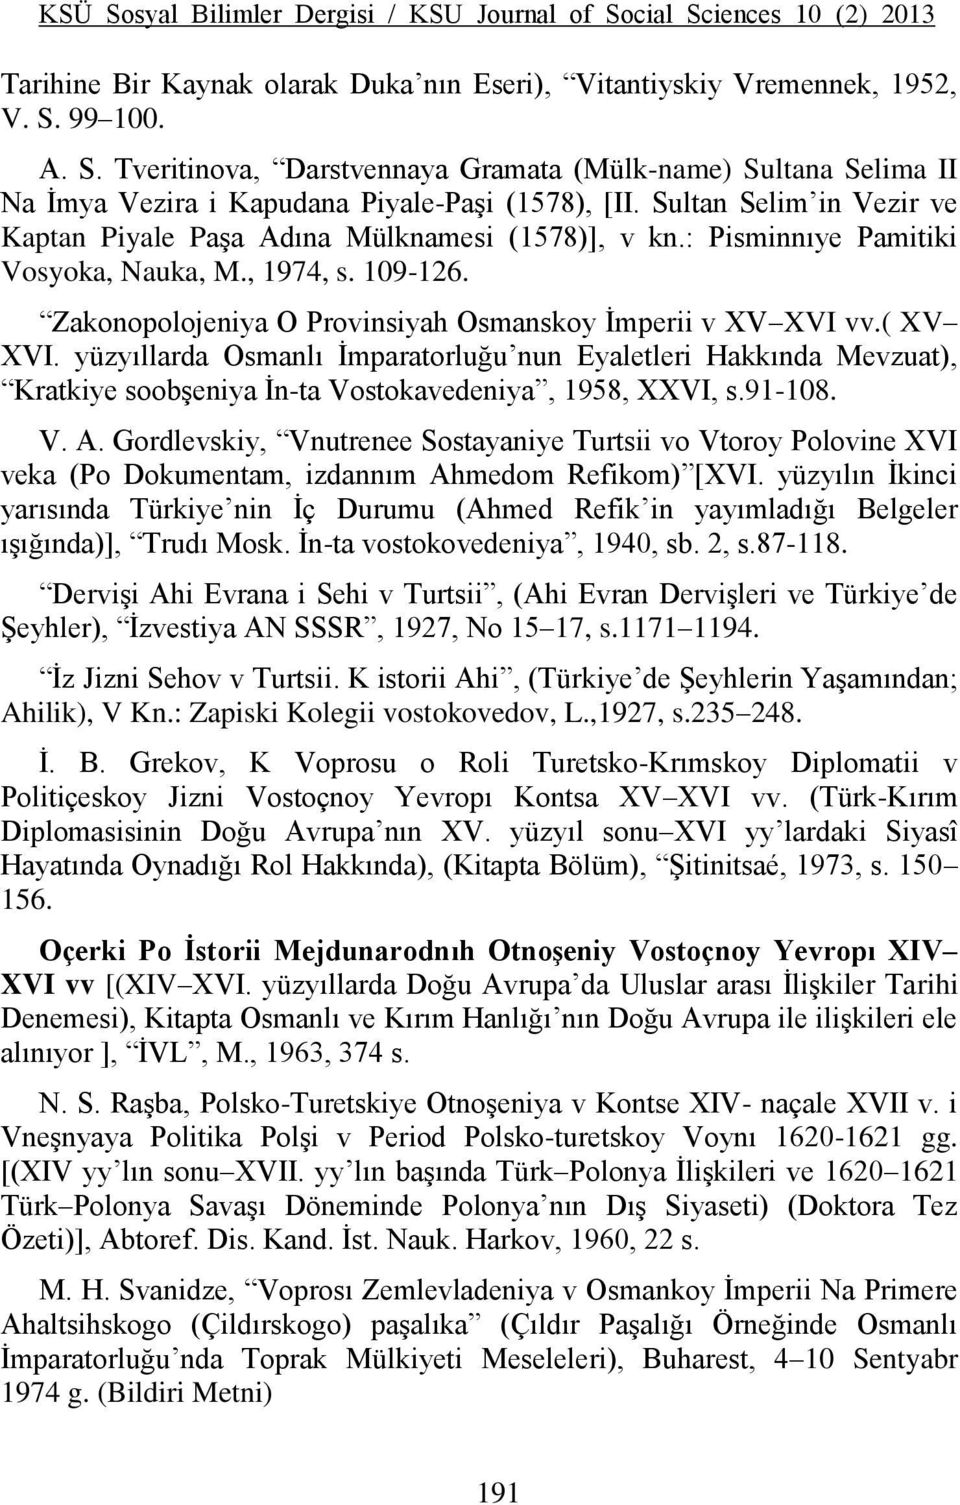 ( XV XVI. yüzyıllarda Osmanlı İmparatorluğu nun Eyaletleri Hakkında Mevzuat), Kratkiye soobşeniya İn-ta Vostokavedeniya, 1958, XXVI, s.91-108. V. A.